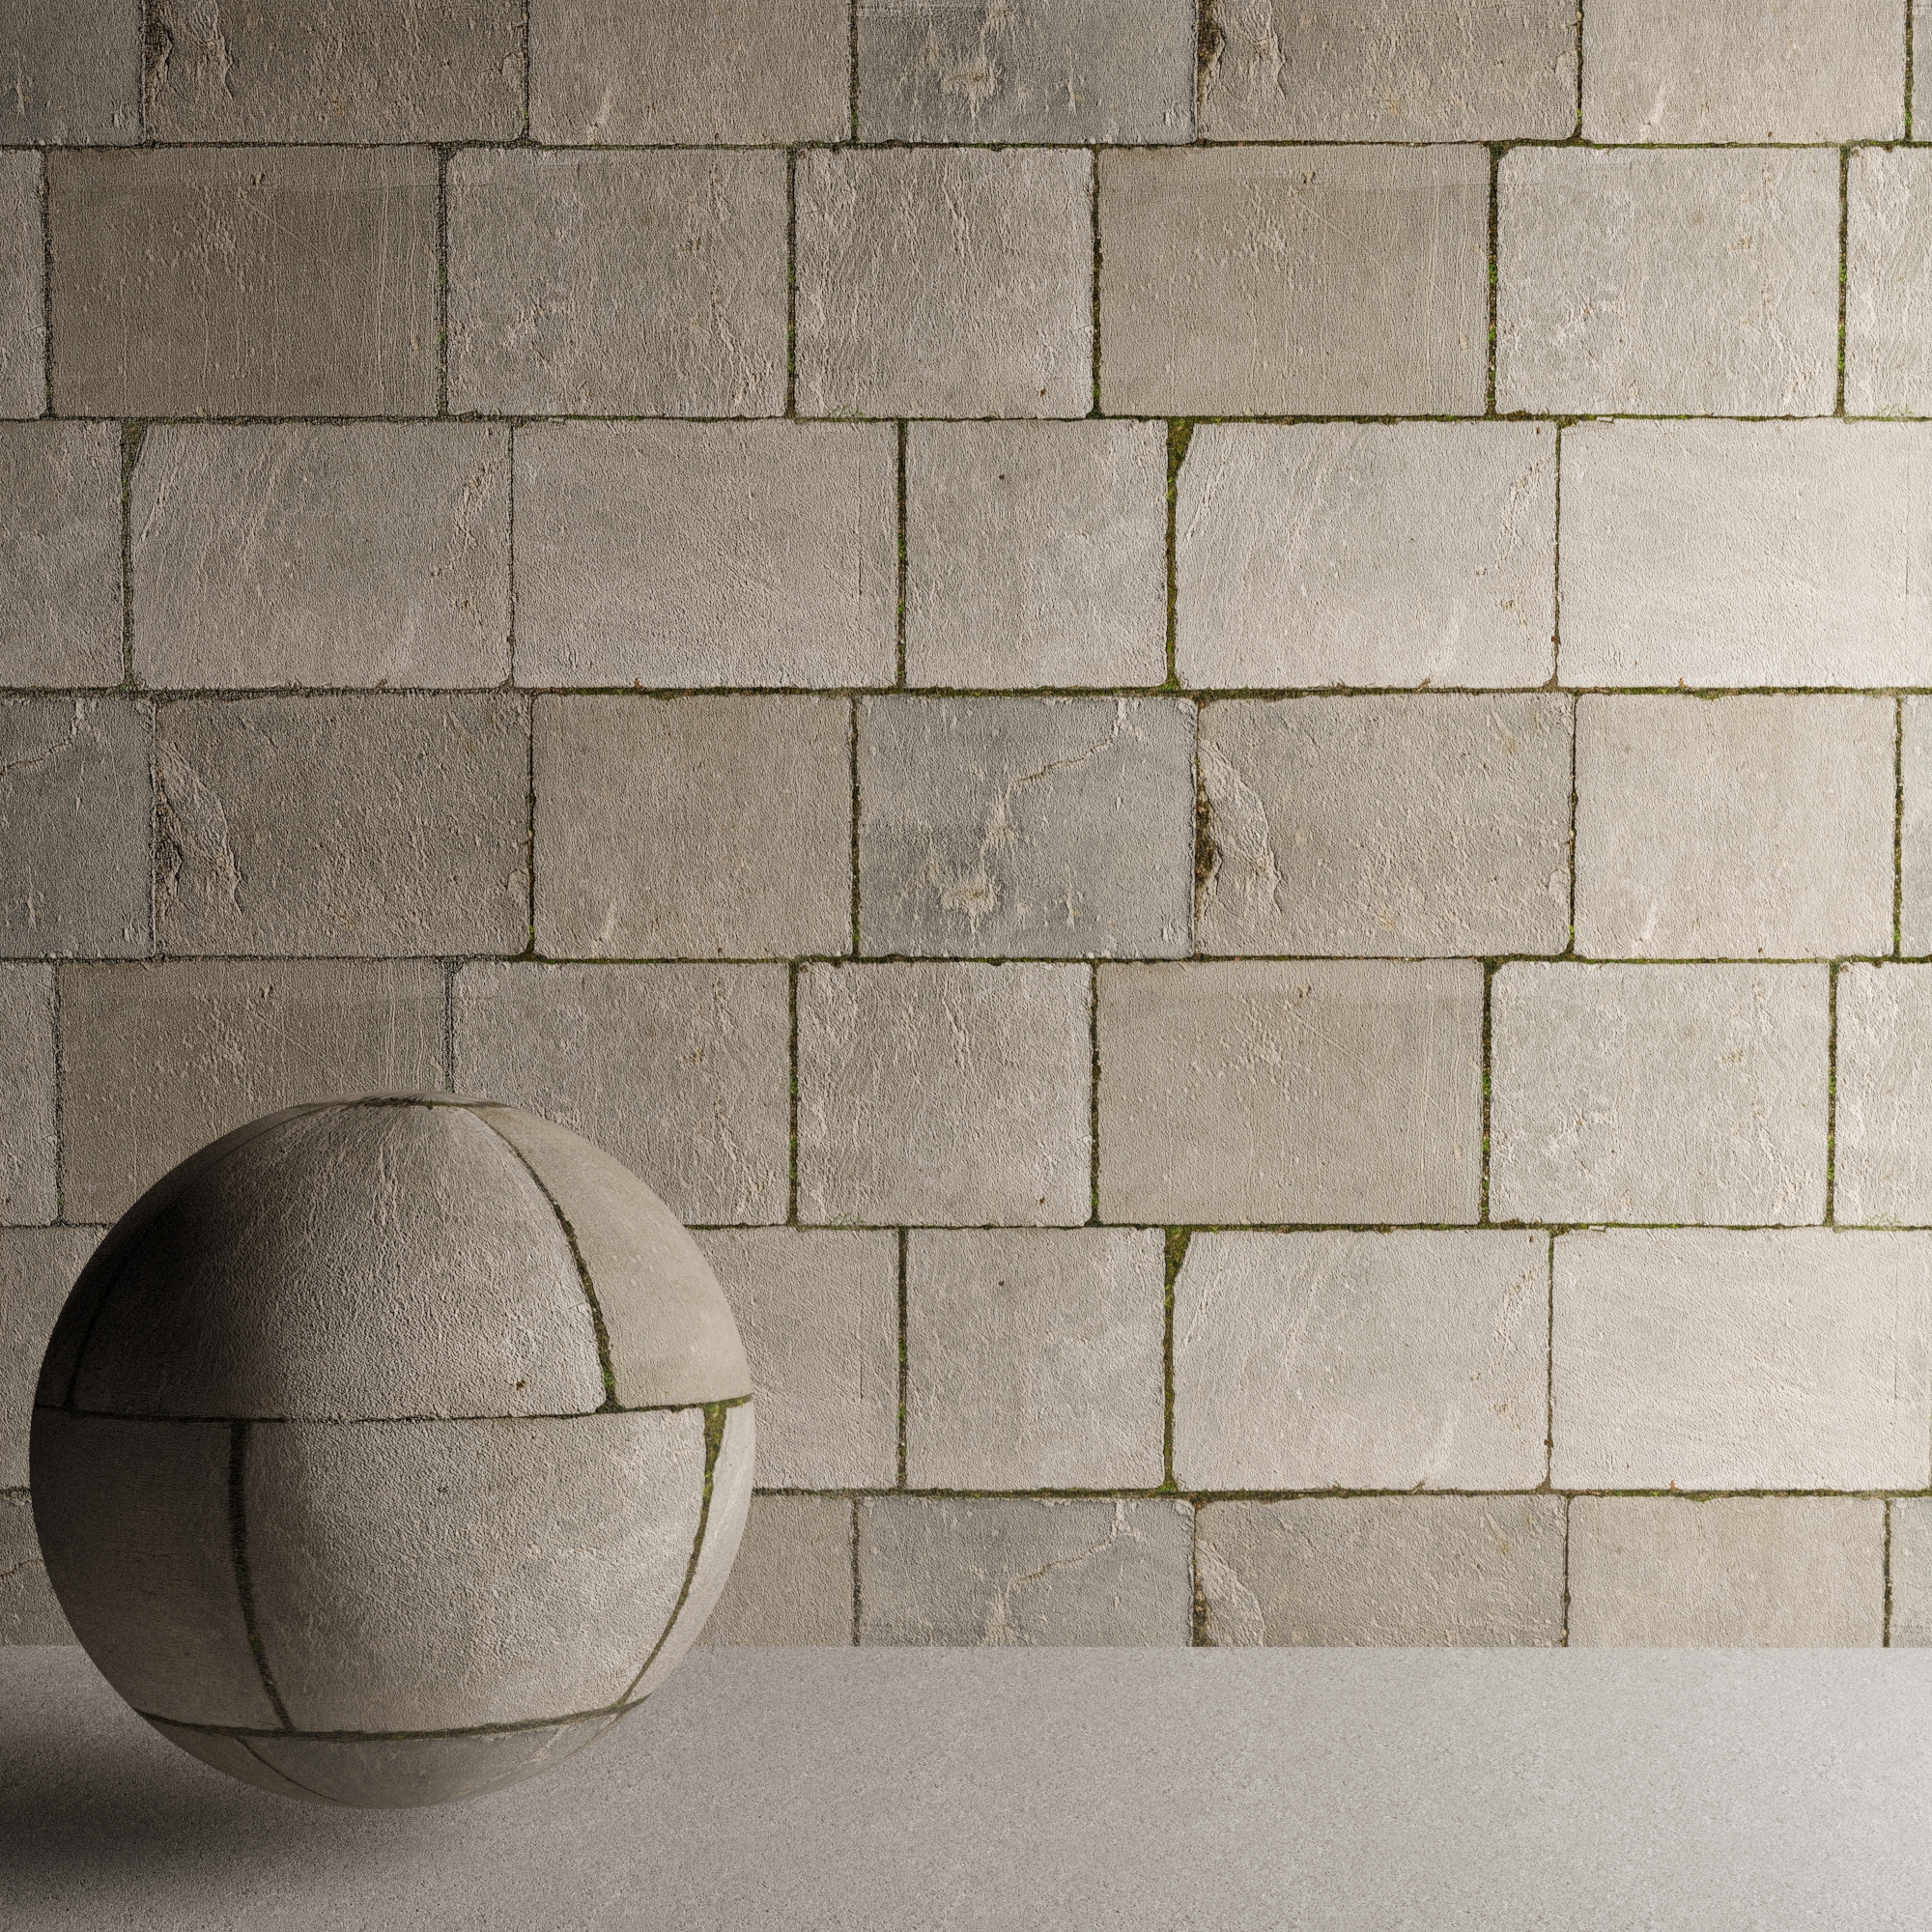 灰色青苔水泥墙砖Large gray tiles贴图材质+3d模型文件下载插图1